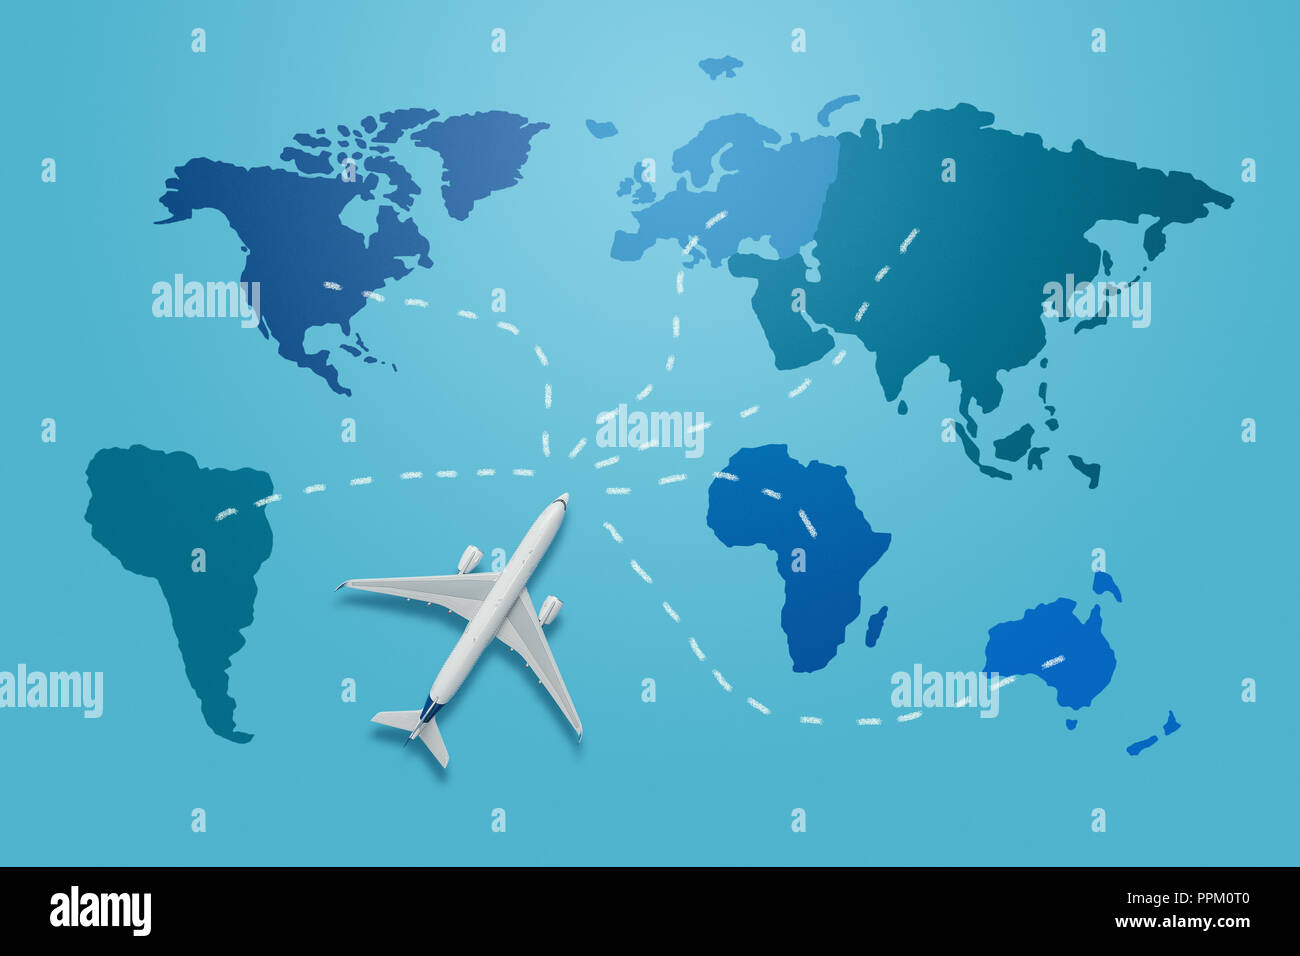 Viaggiare in tutto il mondo concetto. Piccolo aereo modello sul mondo blu mappa con diverse destinazioni di viaggio Foto Stock